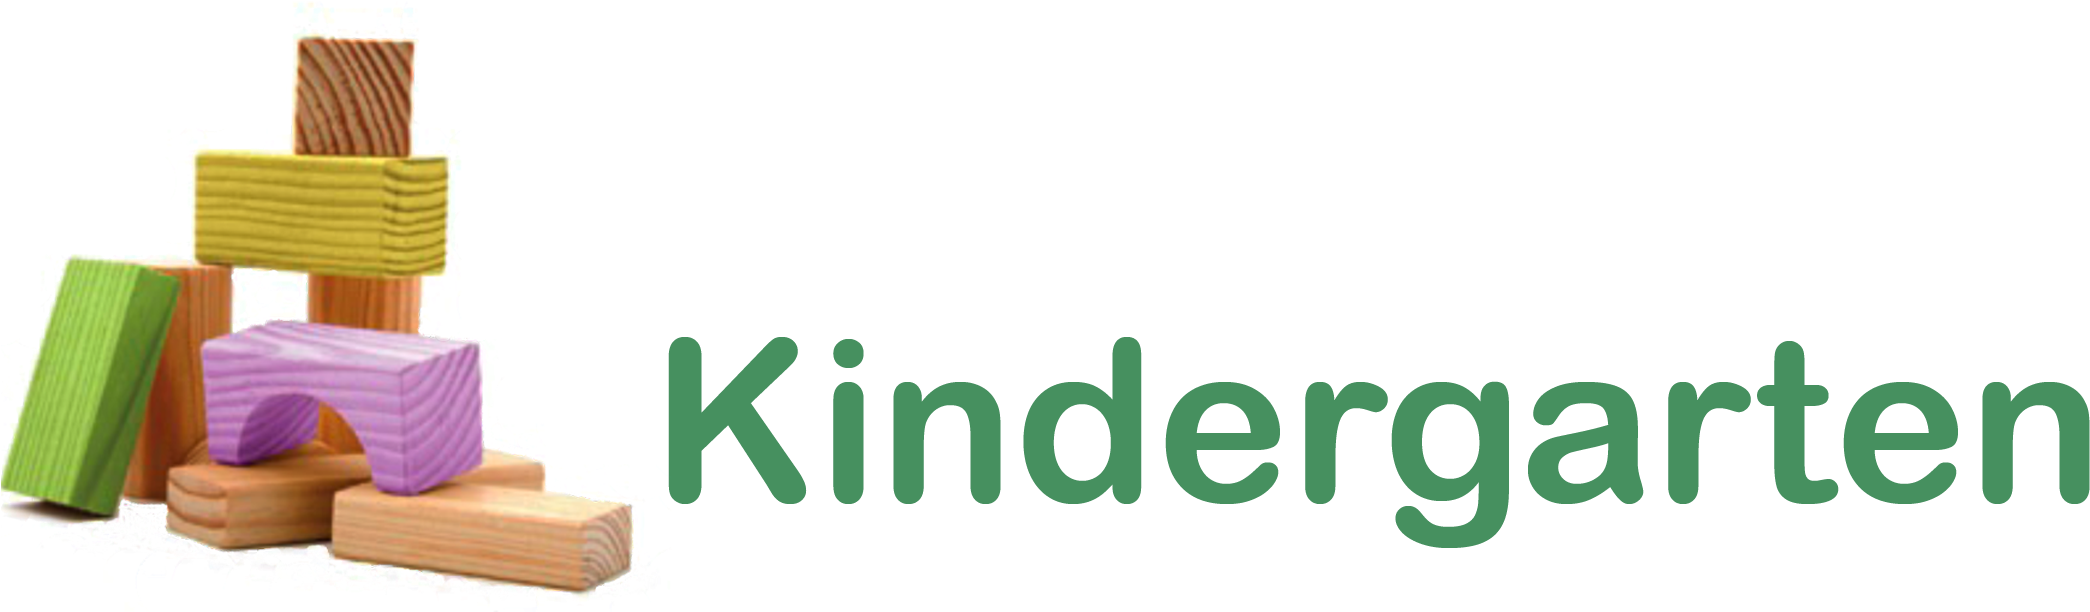 Fullday Kindergarten Logo - Transparent Kindergarten Png (2138x709), Png Download